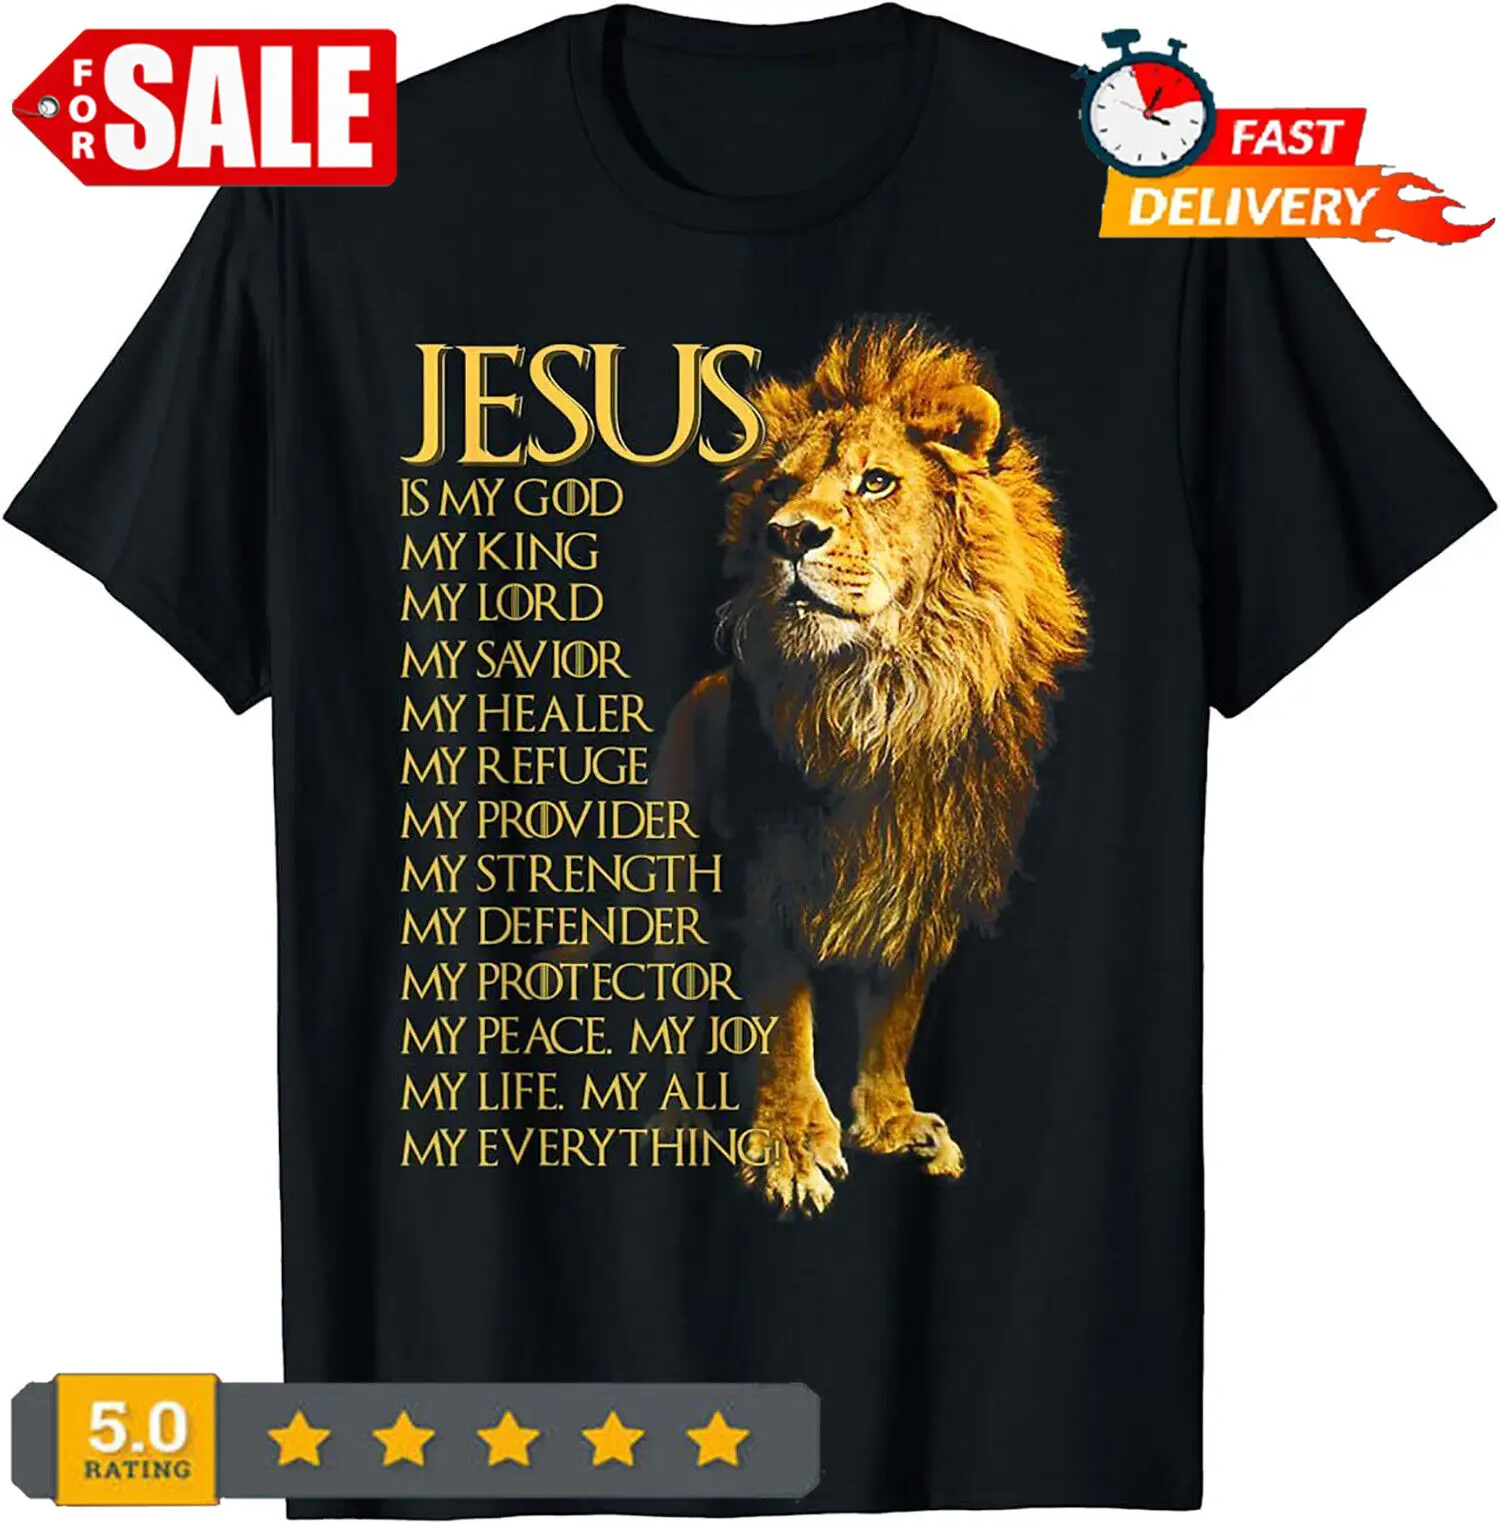 Иисус - мой Бог Царь, мой Господь, мой Спаситель, Желтый лев, христианская футболка 0